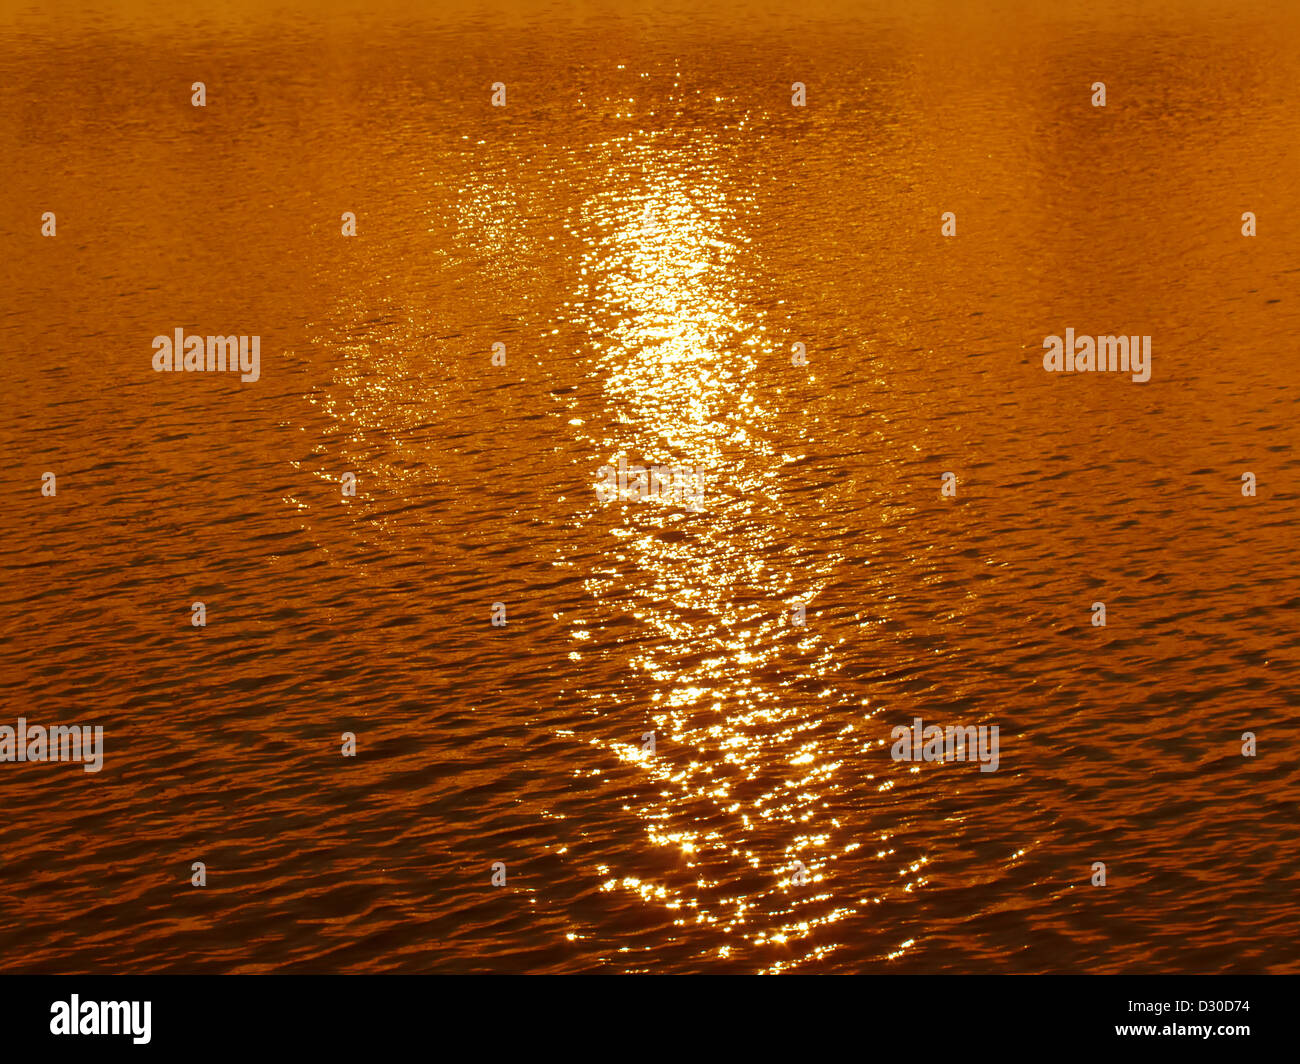 Schöner Sonnenuntergang Wasser Hintergrund Stockfoto